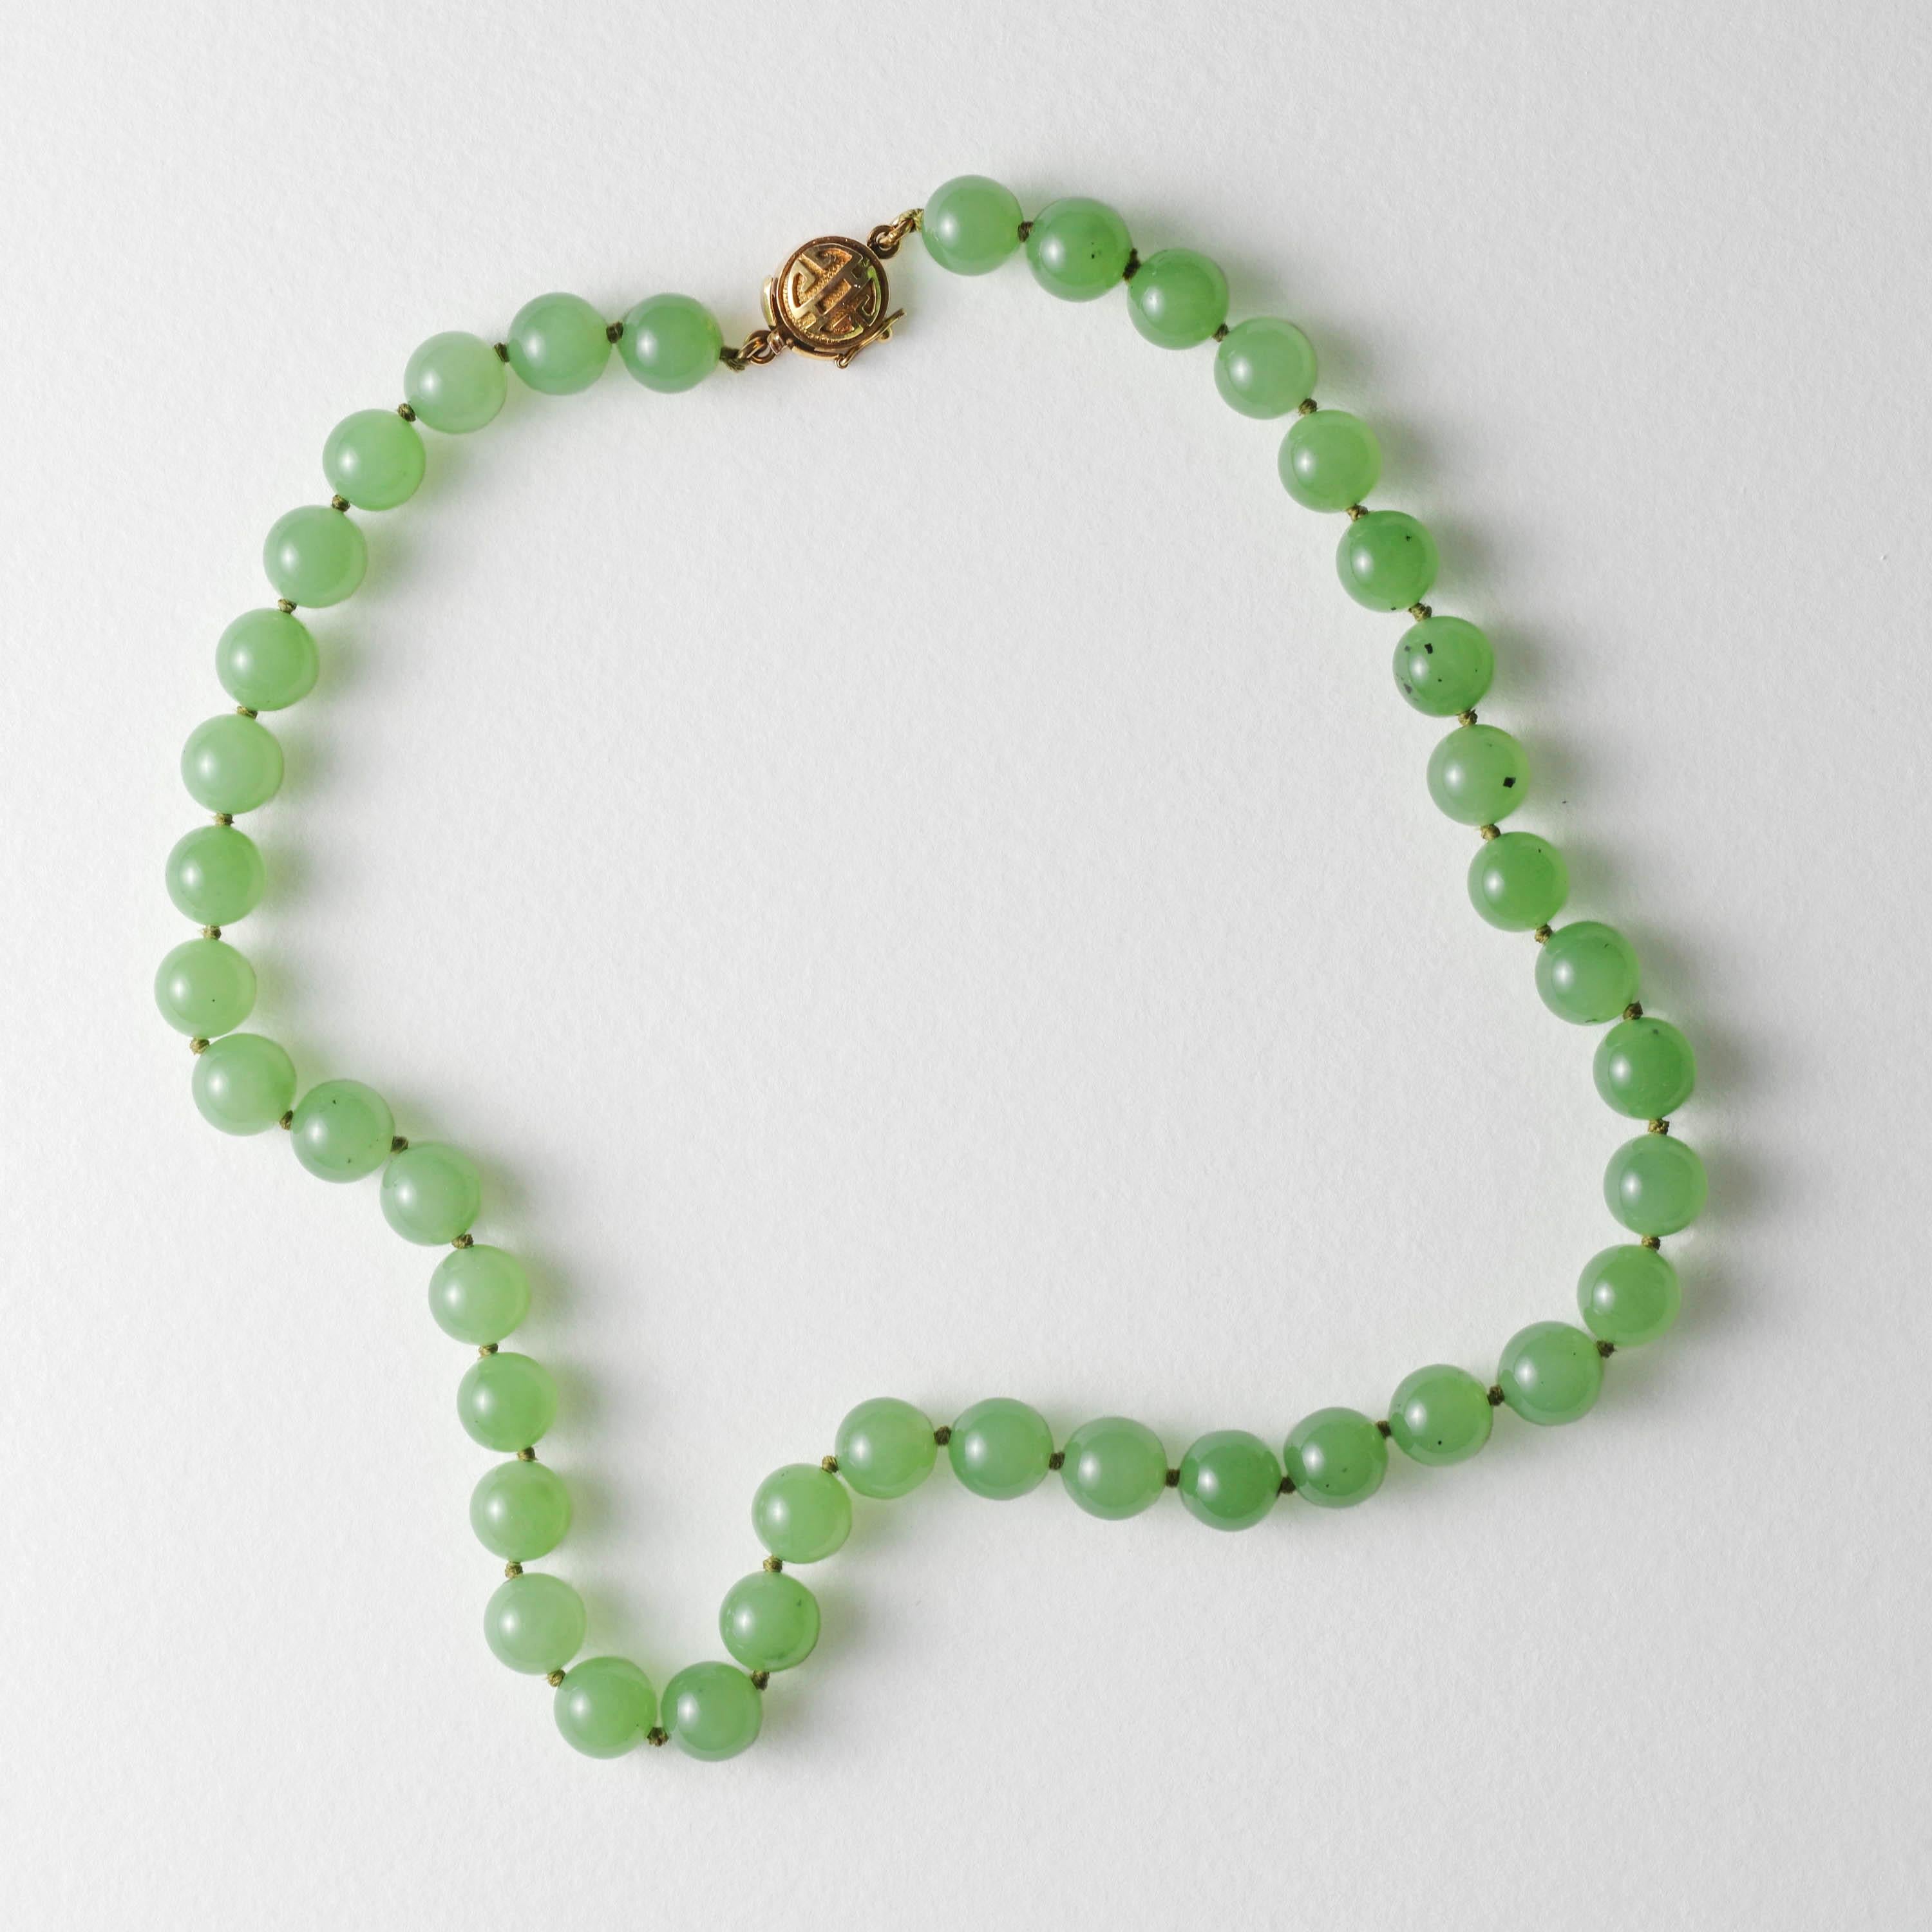 Ce rare collier en jade néphrite de Gump, datant du milieu du siècle dernier (vers les années 1960), est d'un vert chartreuse clair exceptionnellement translucide. En effet, les perles sculptées et polies à la main sont si translucides qu'elles